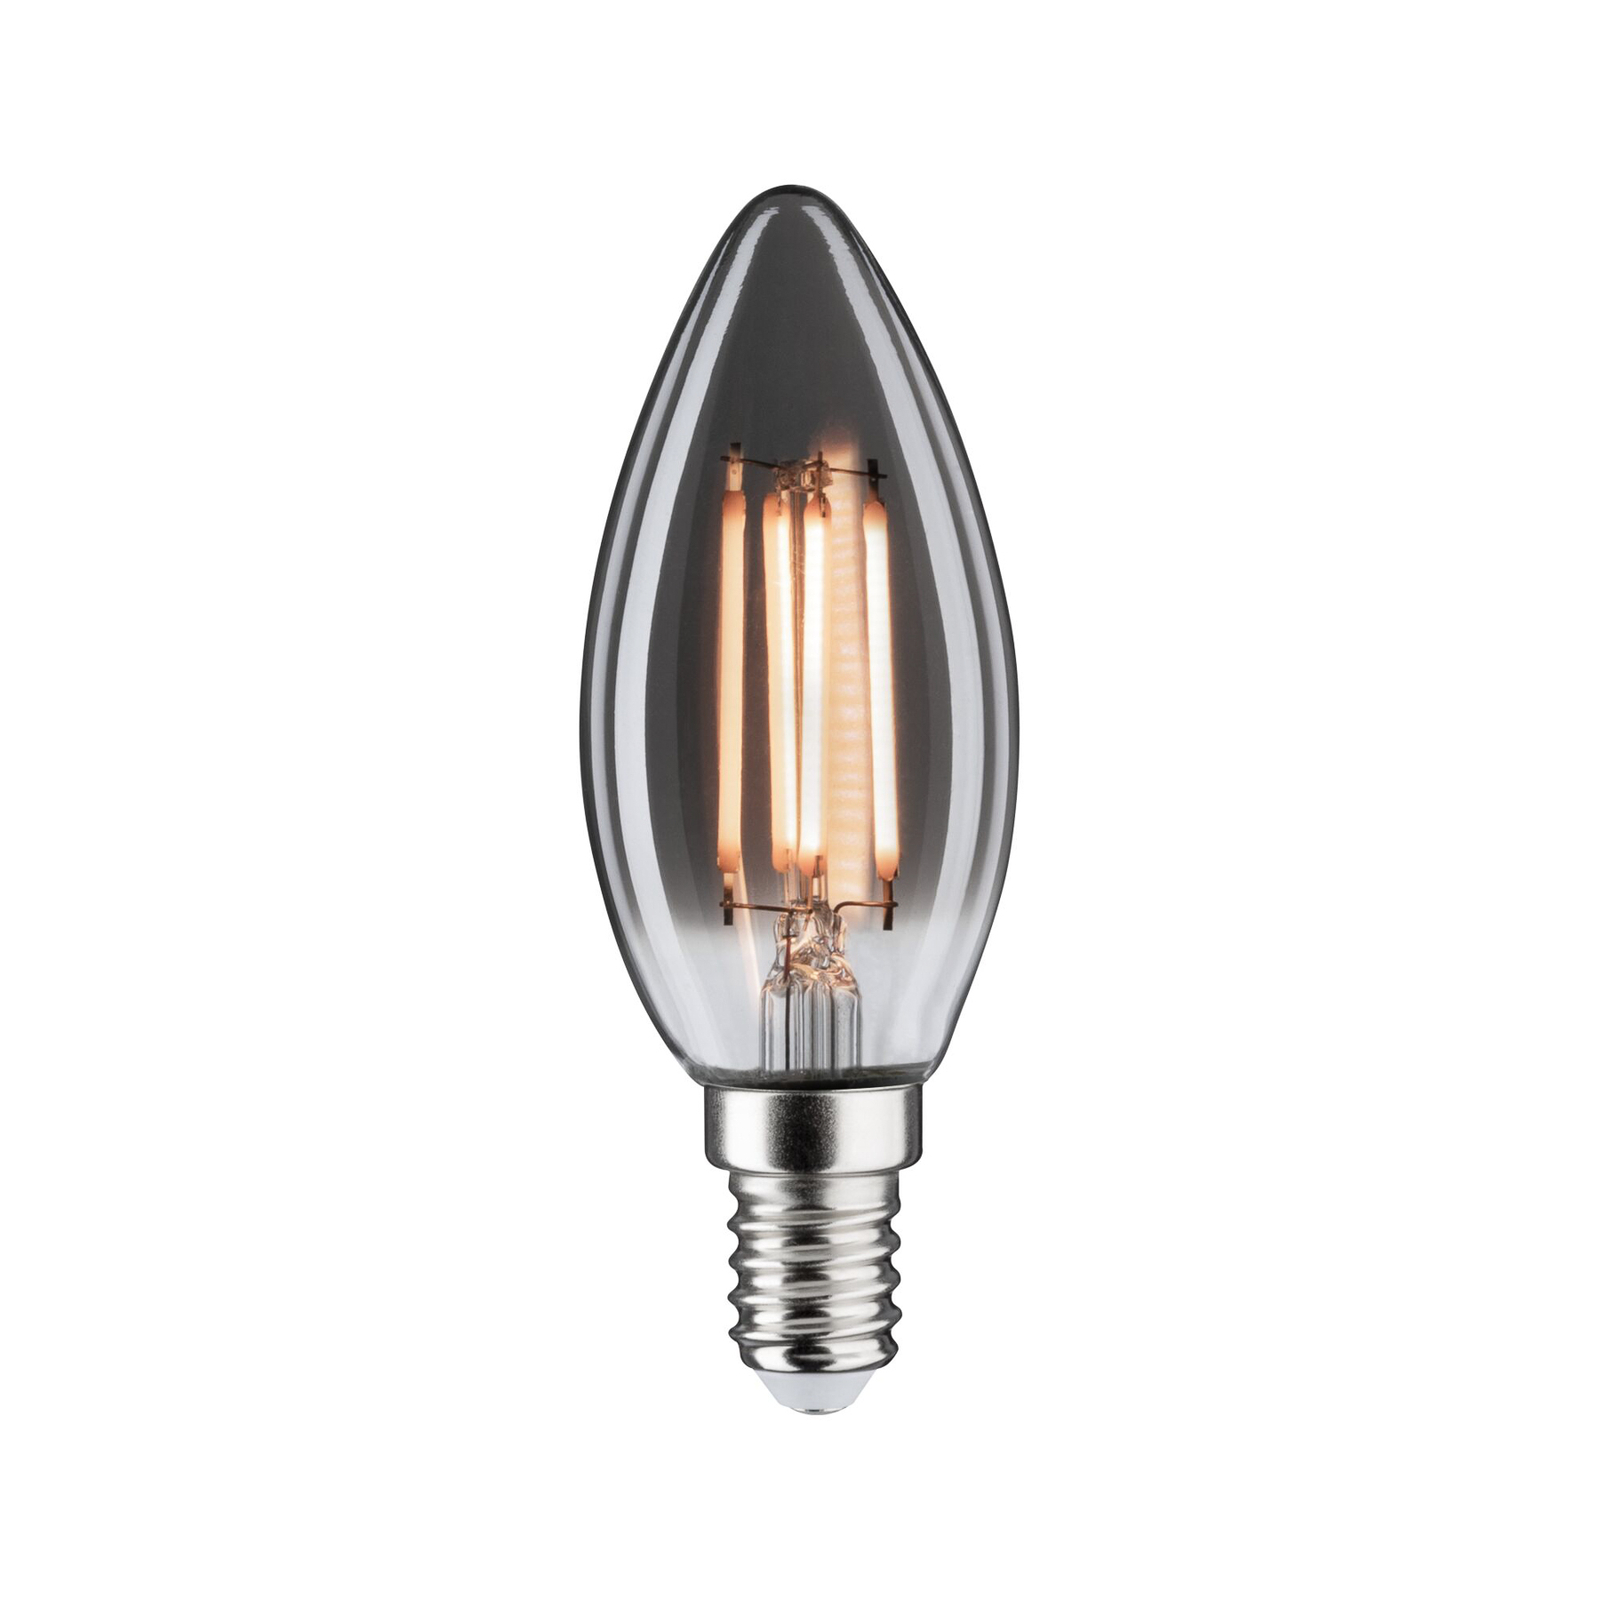 Paulmann LED lámpa E14 4W 818 145lm dimm. füst